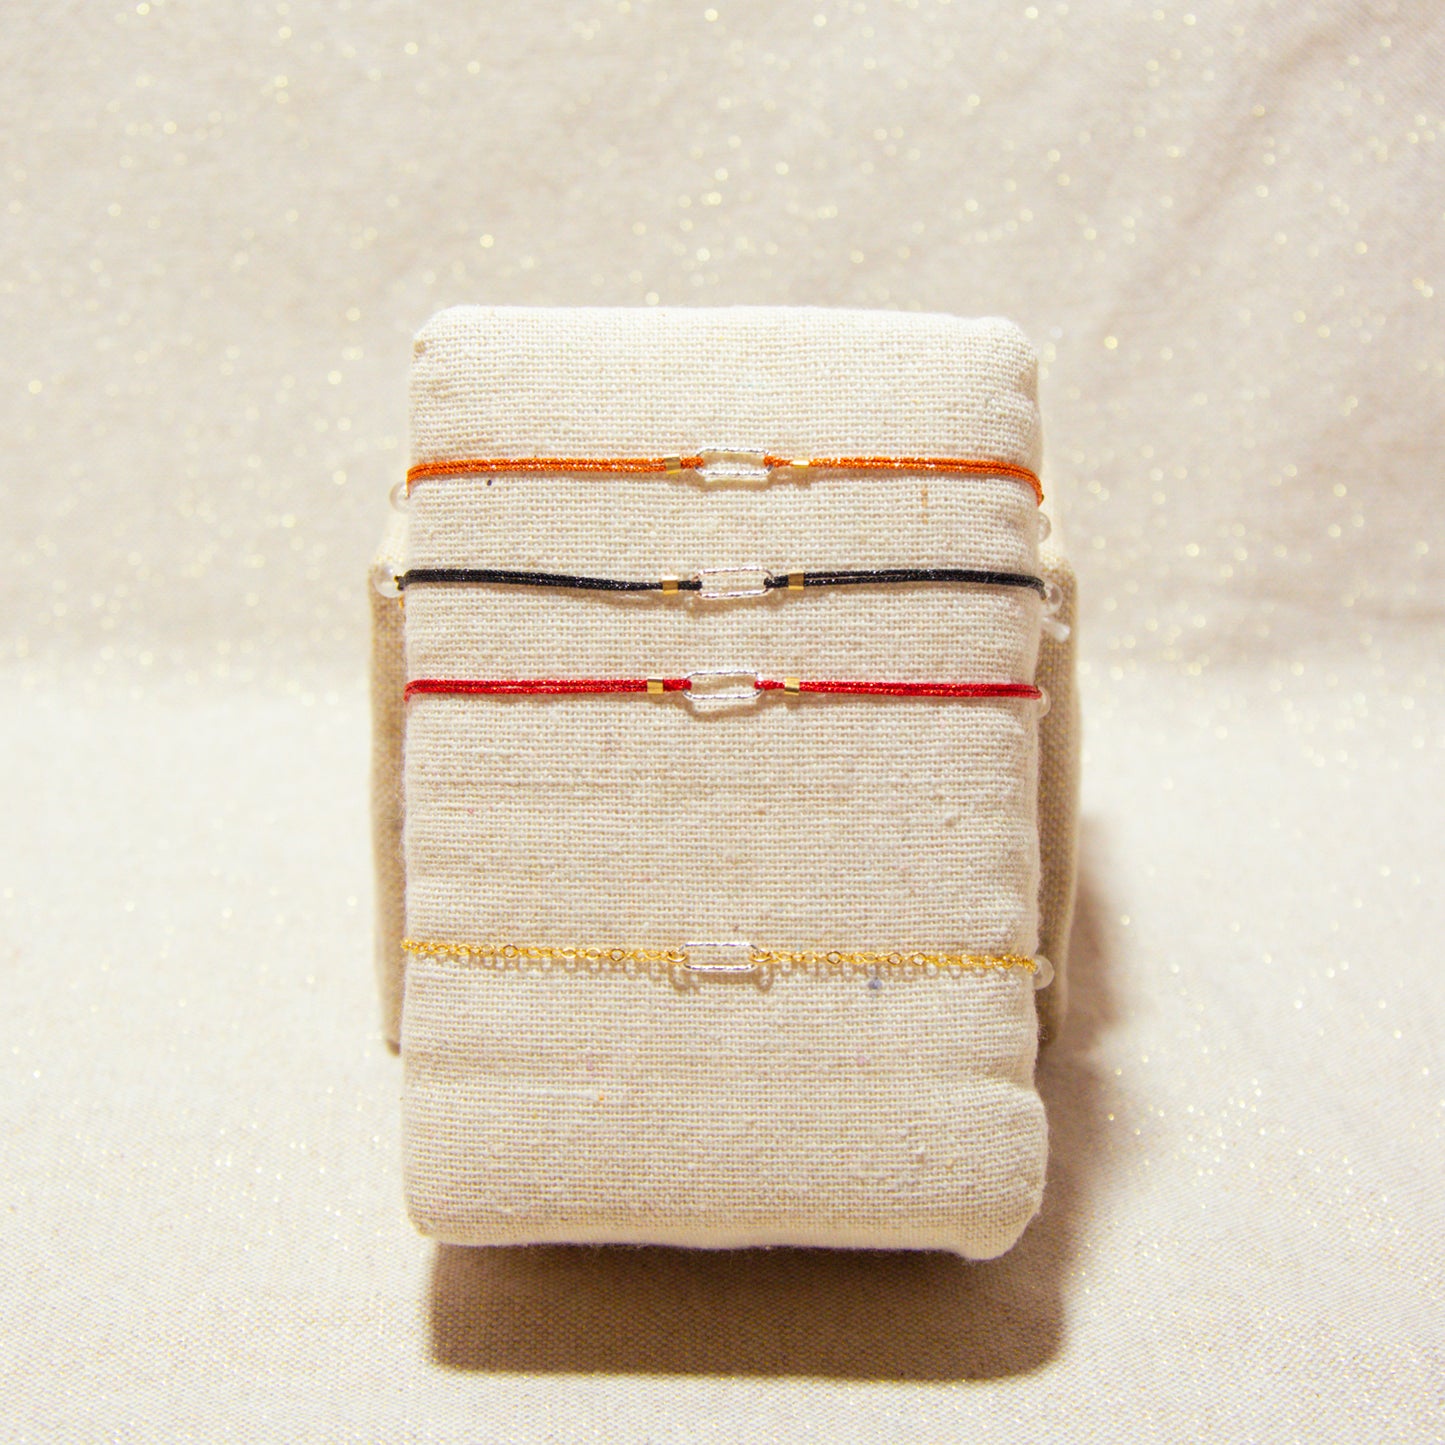 Japanese Double Silk Bracelets - 925 Silver Chiseled Jersey